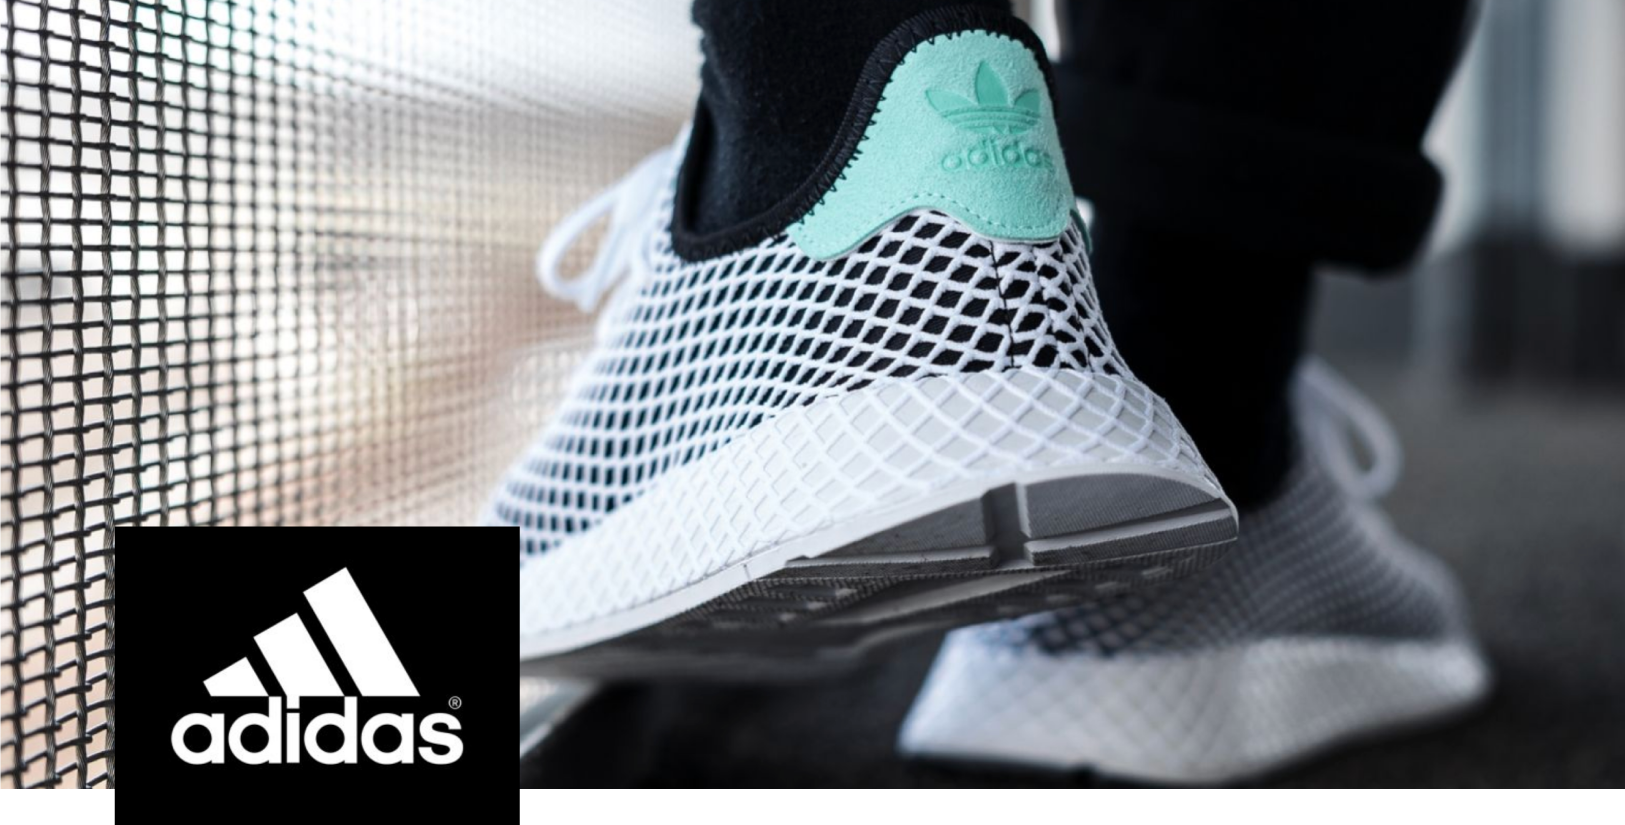 خصومات على اديداس adidas في amazon prime day من امازون الامارات مع كاش باك